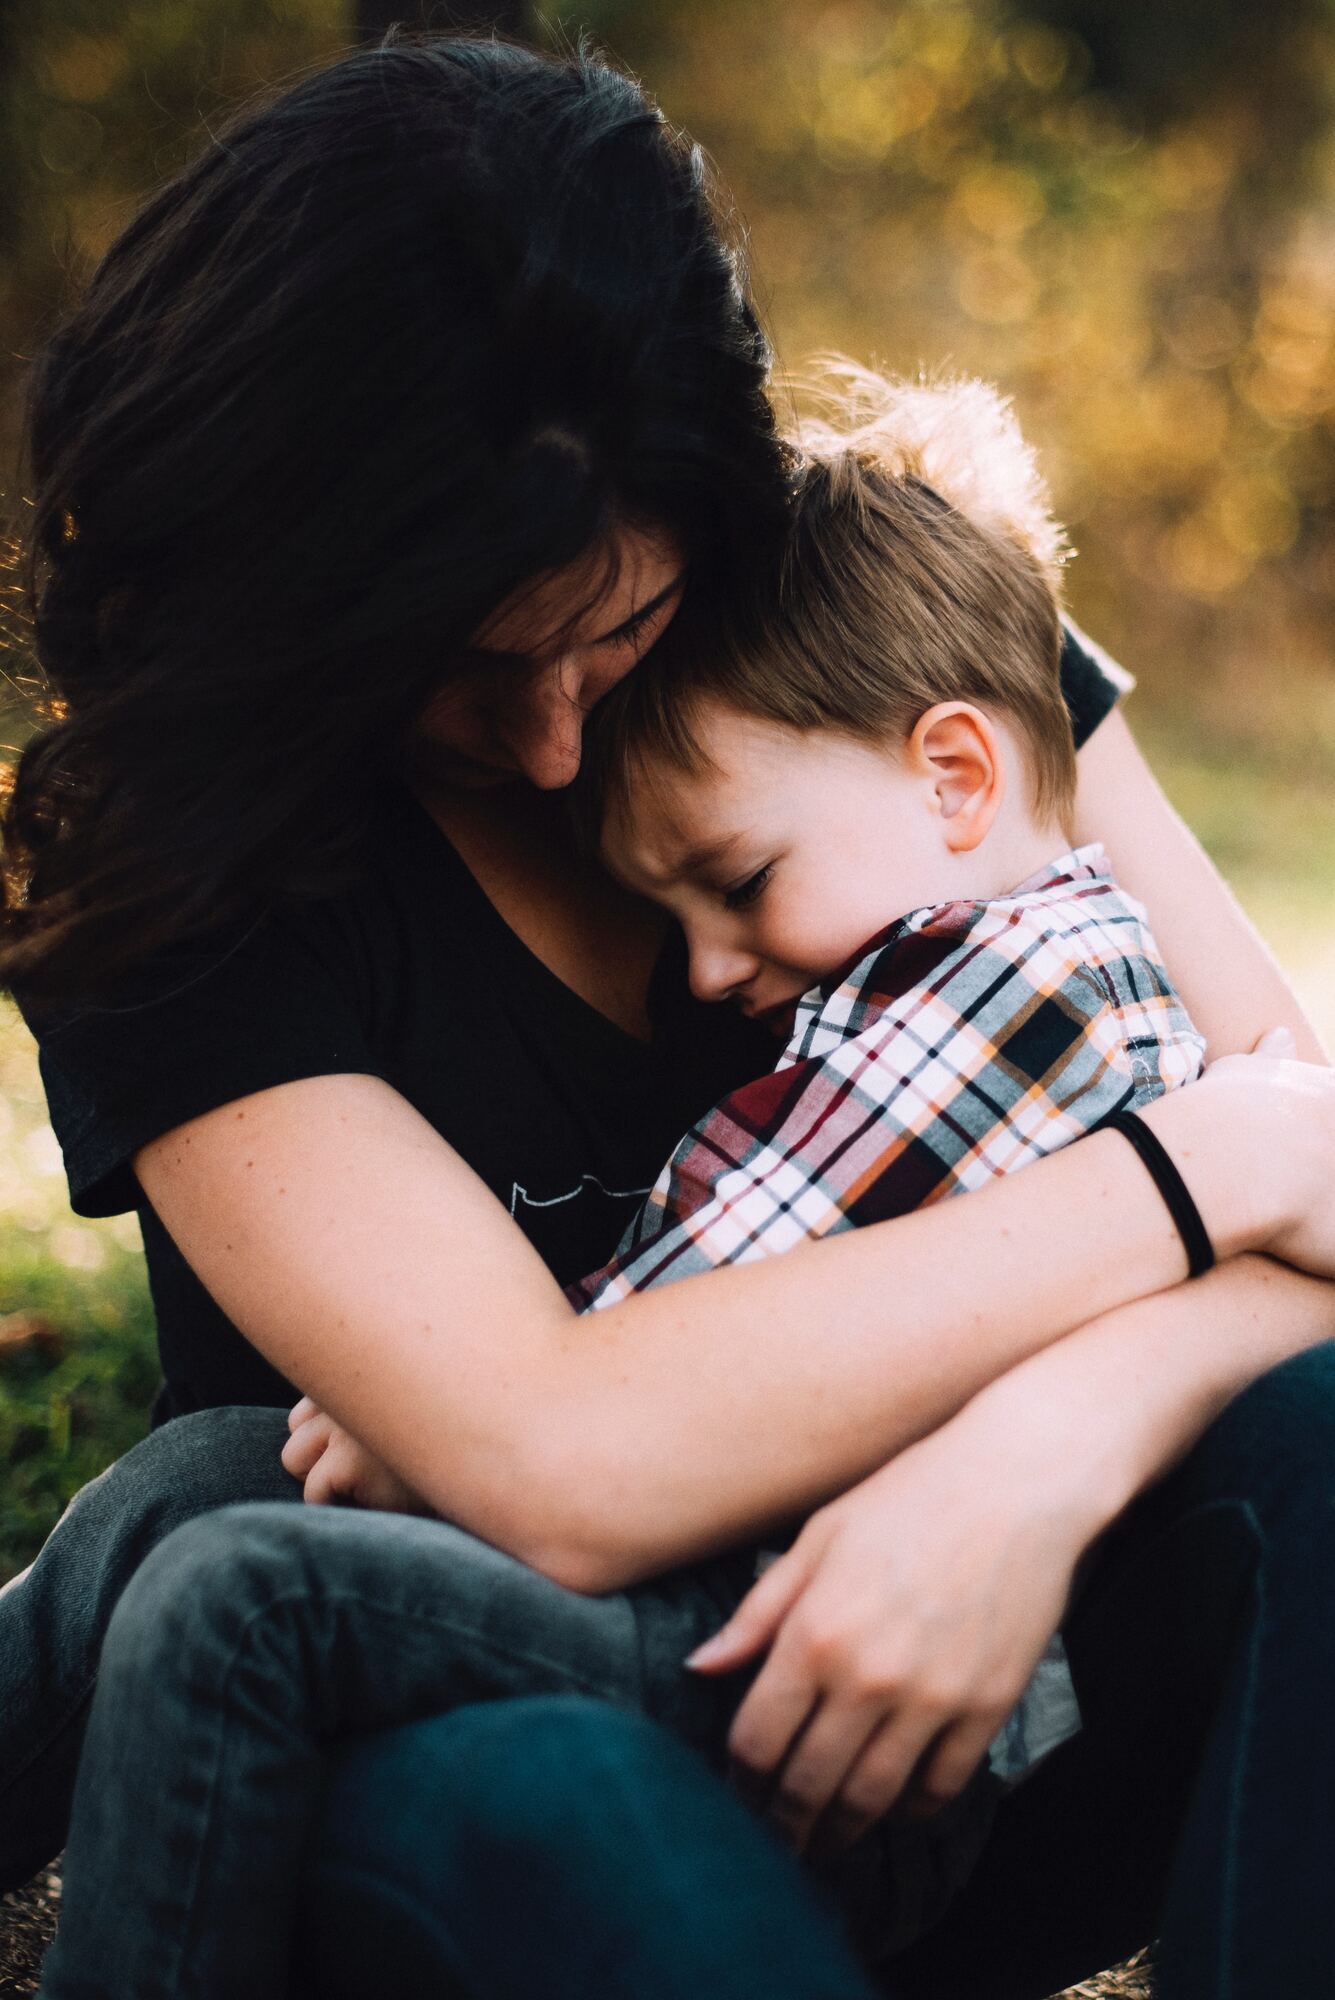 Как запрещать что-либо ребенку без ссор и истерик: советы психолога Марии Сичинской